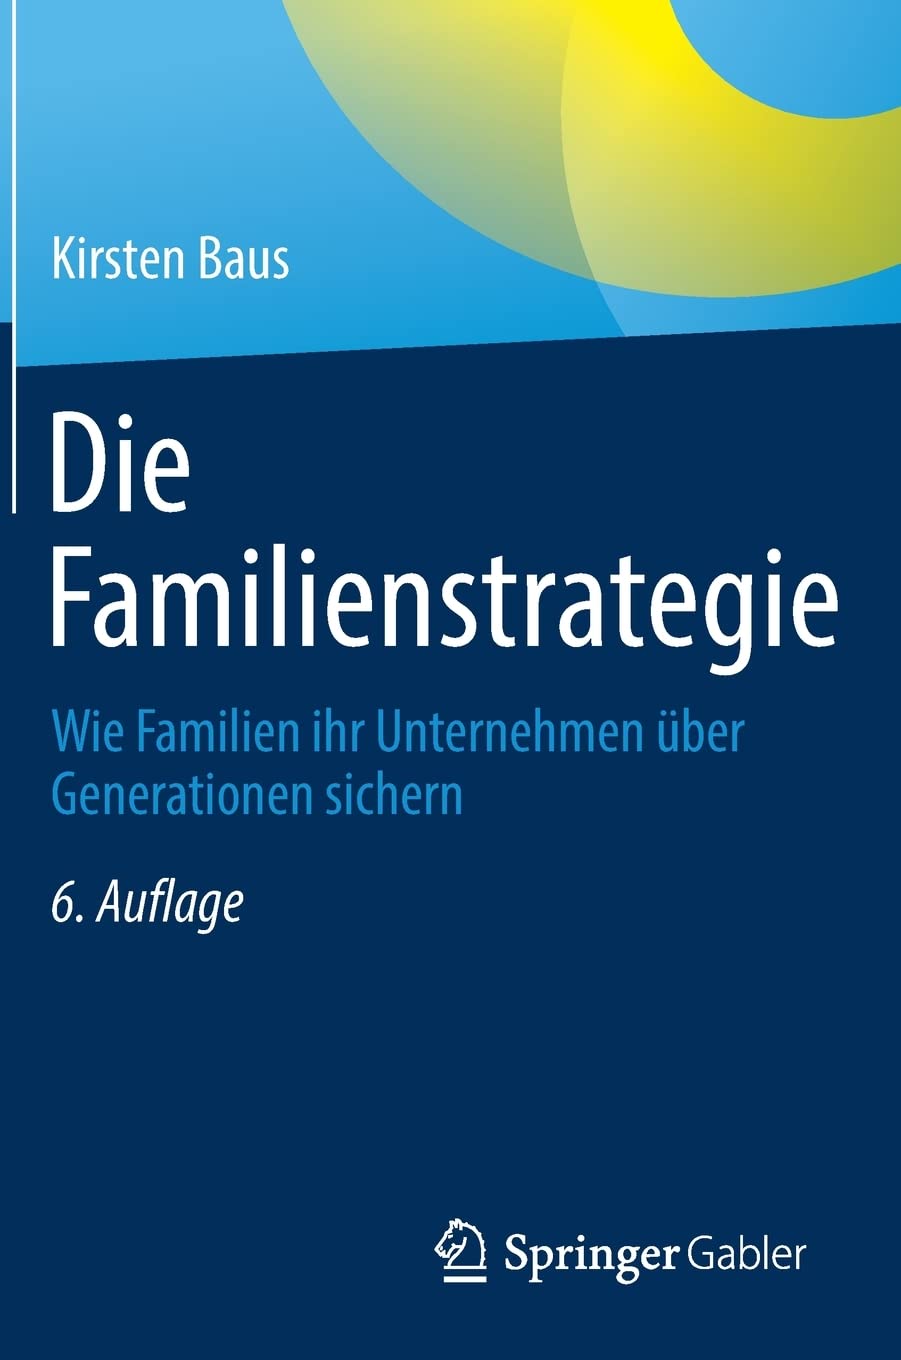 Die Familienstrategie - Wie Familien ihr Unternehmen über Generationen sichern